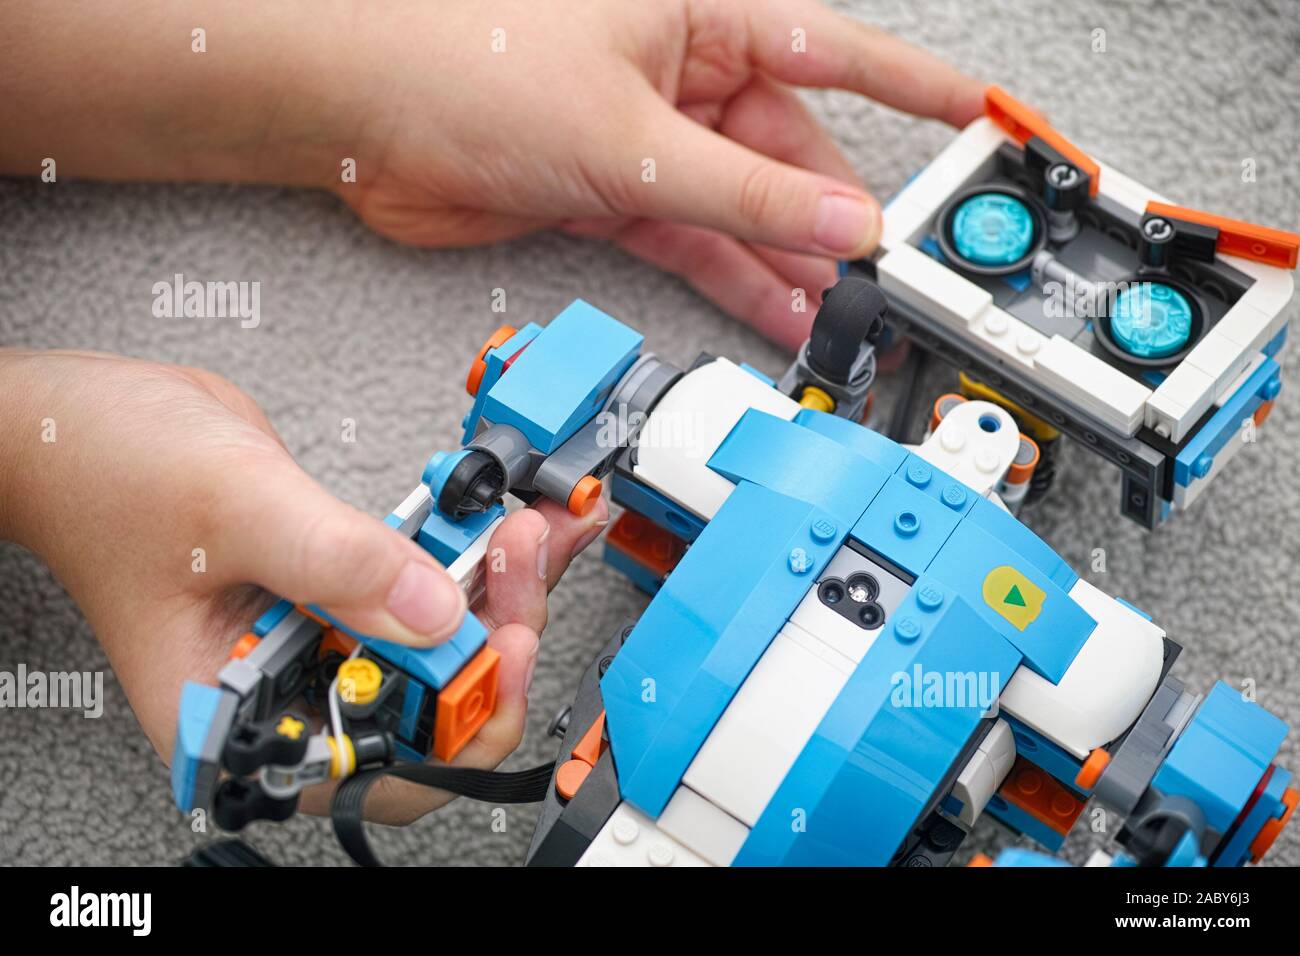 Tambow, Russische Föderation - November 20, 2019 Lego Boost Vernie der Roboter in den Händen. Close Up. Stockfoto